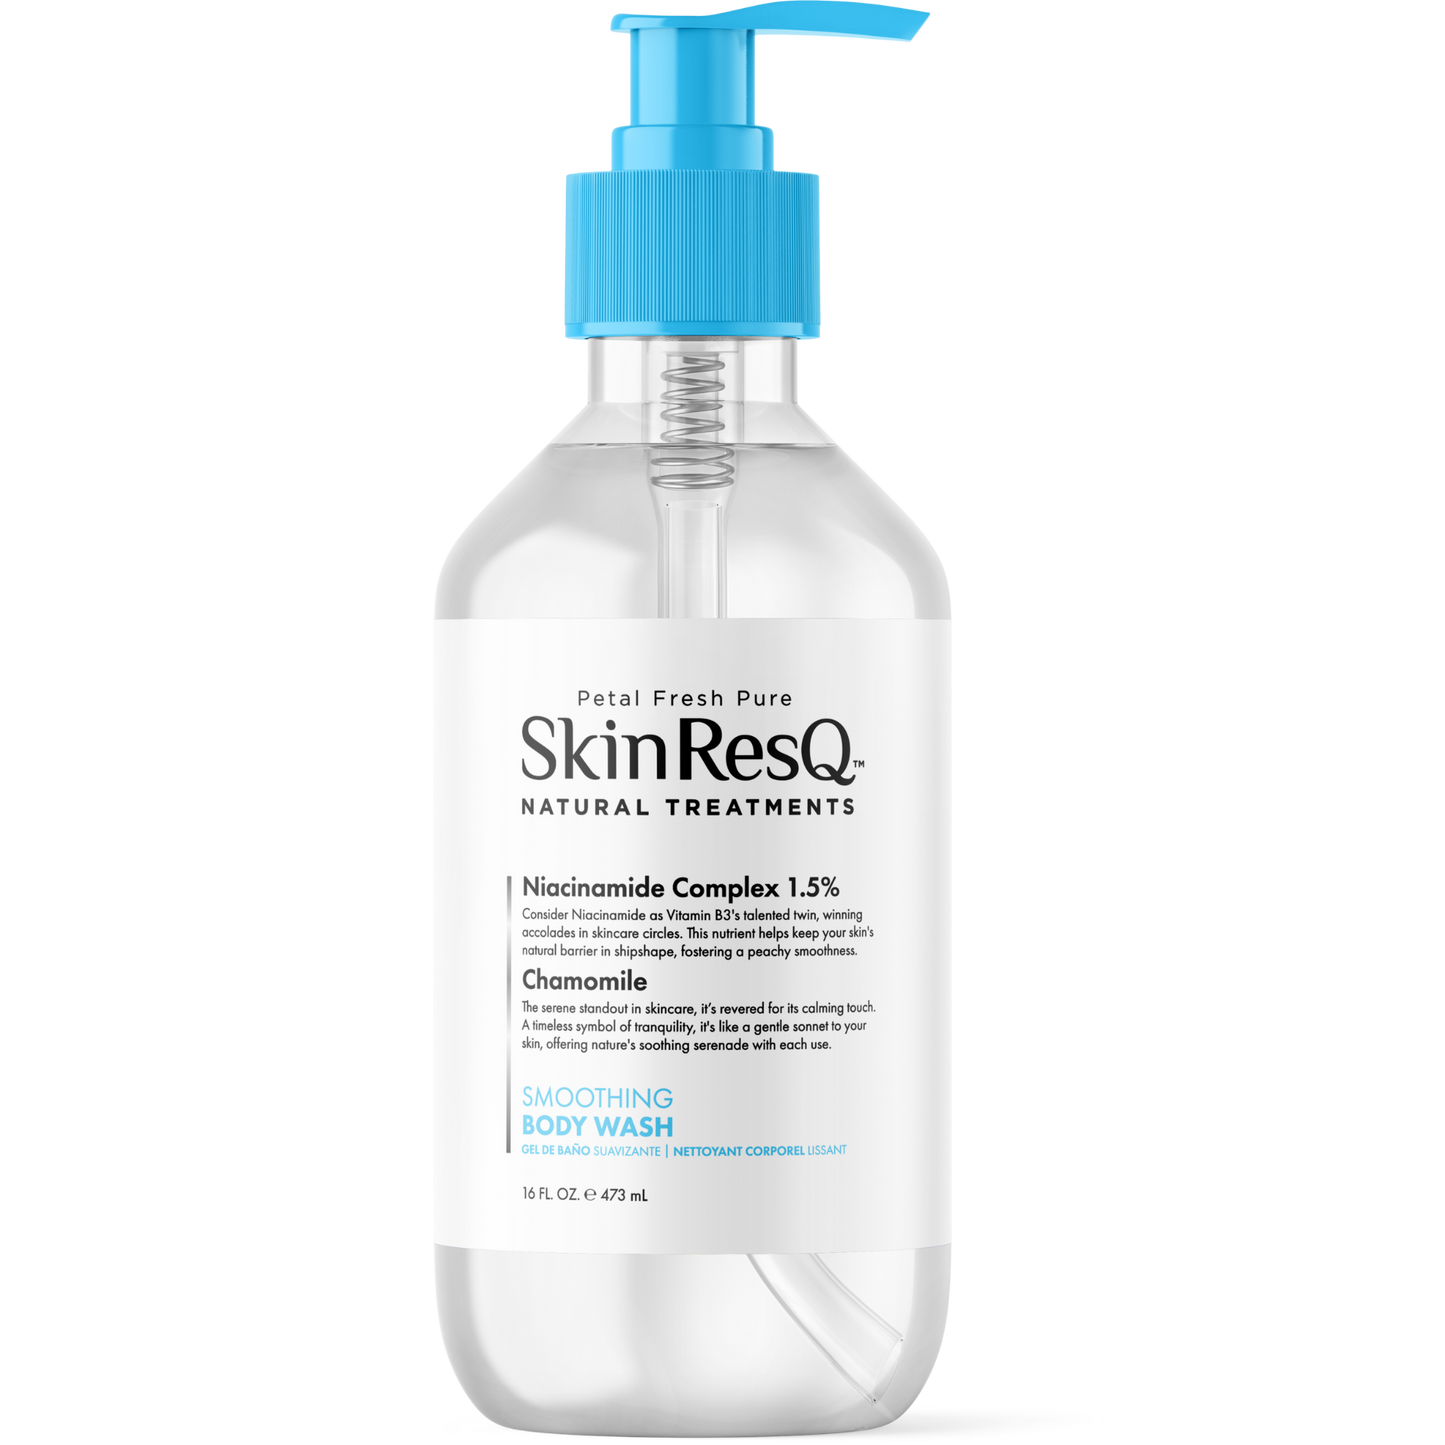 Skin ResQ Smoothing Body Wash